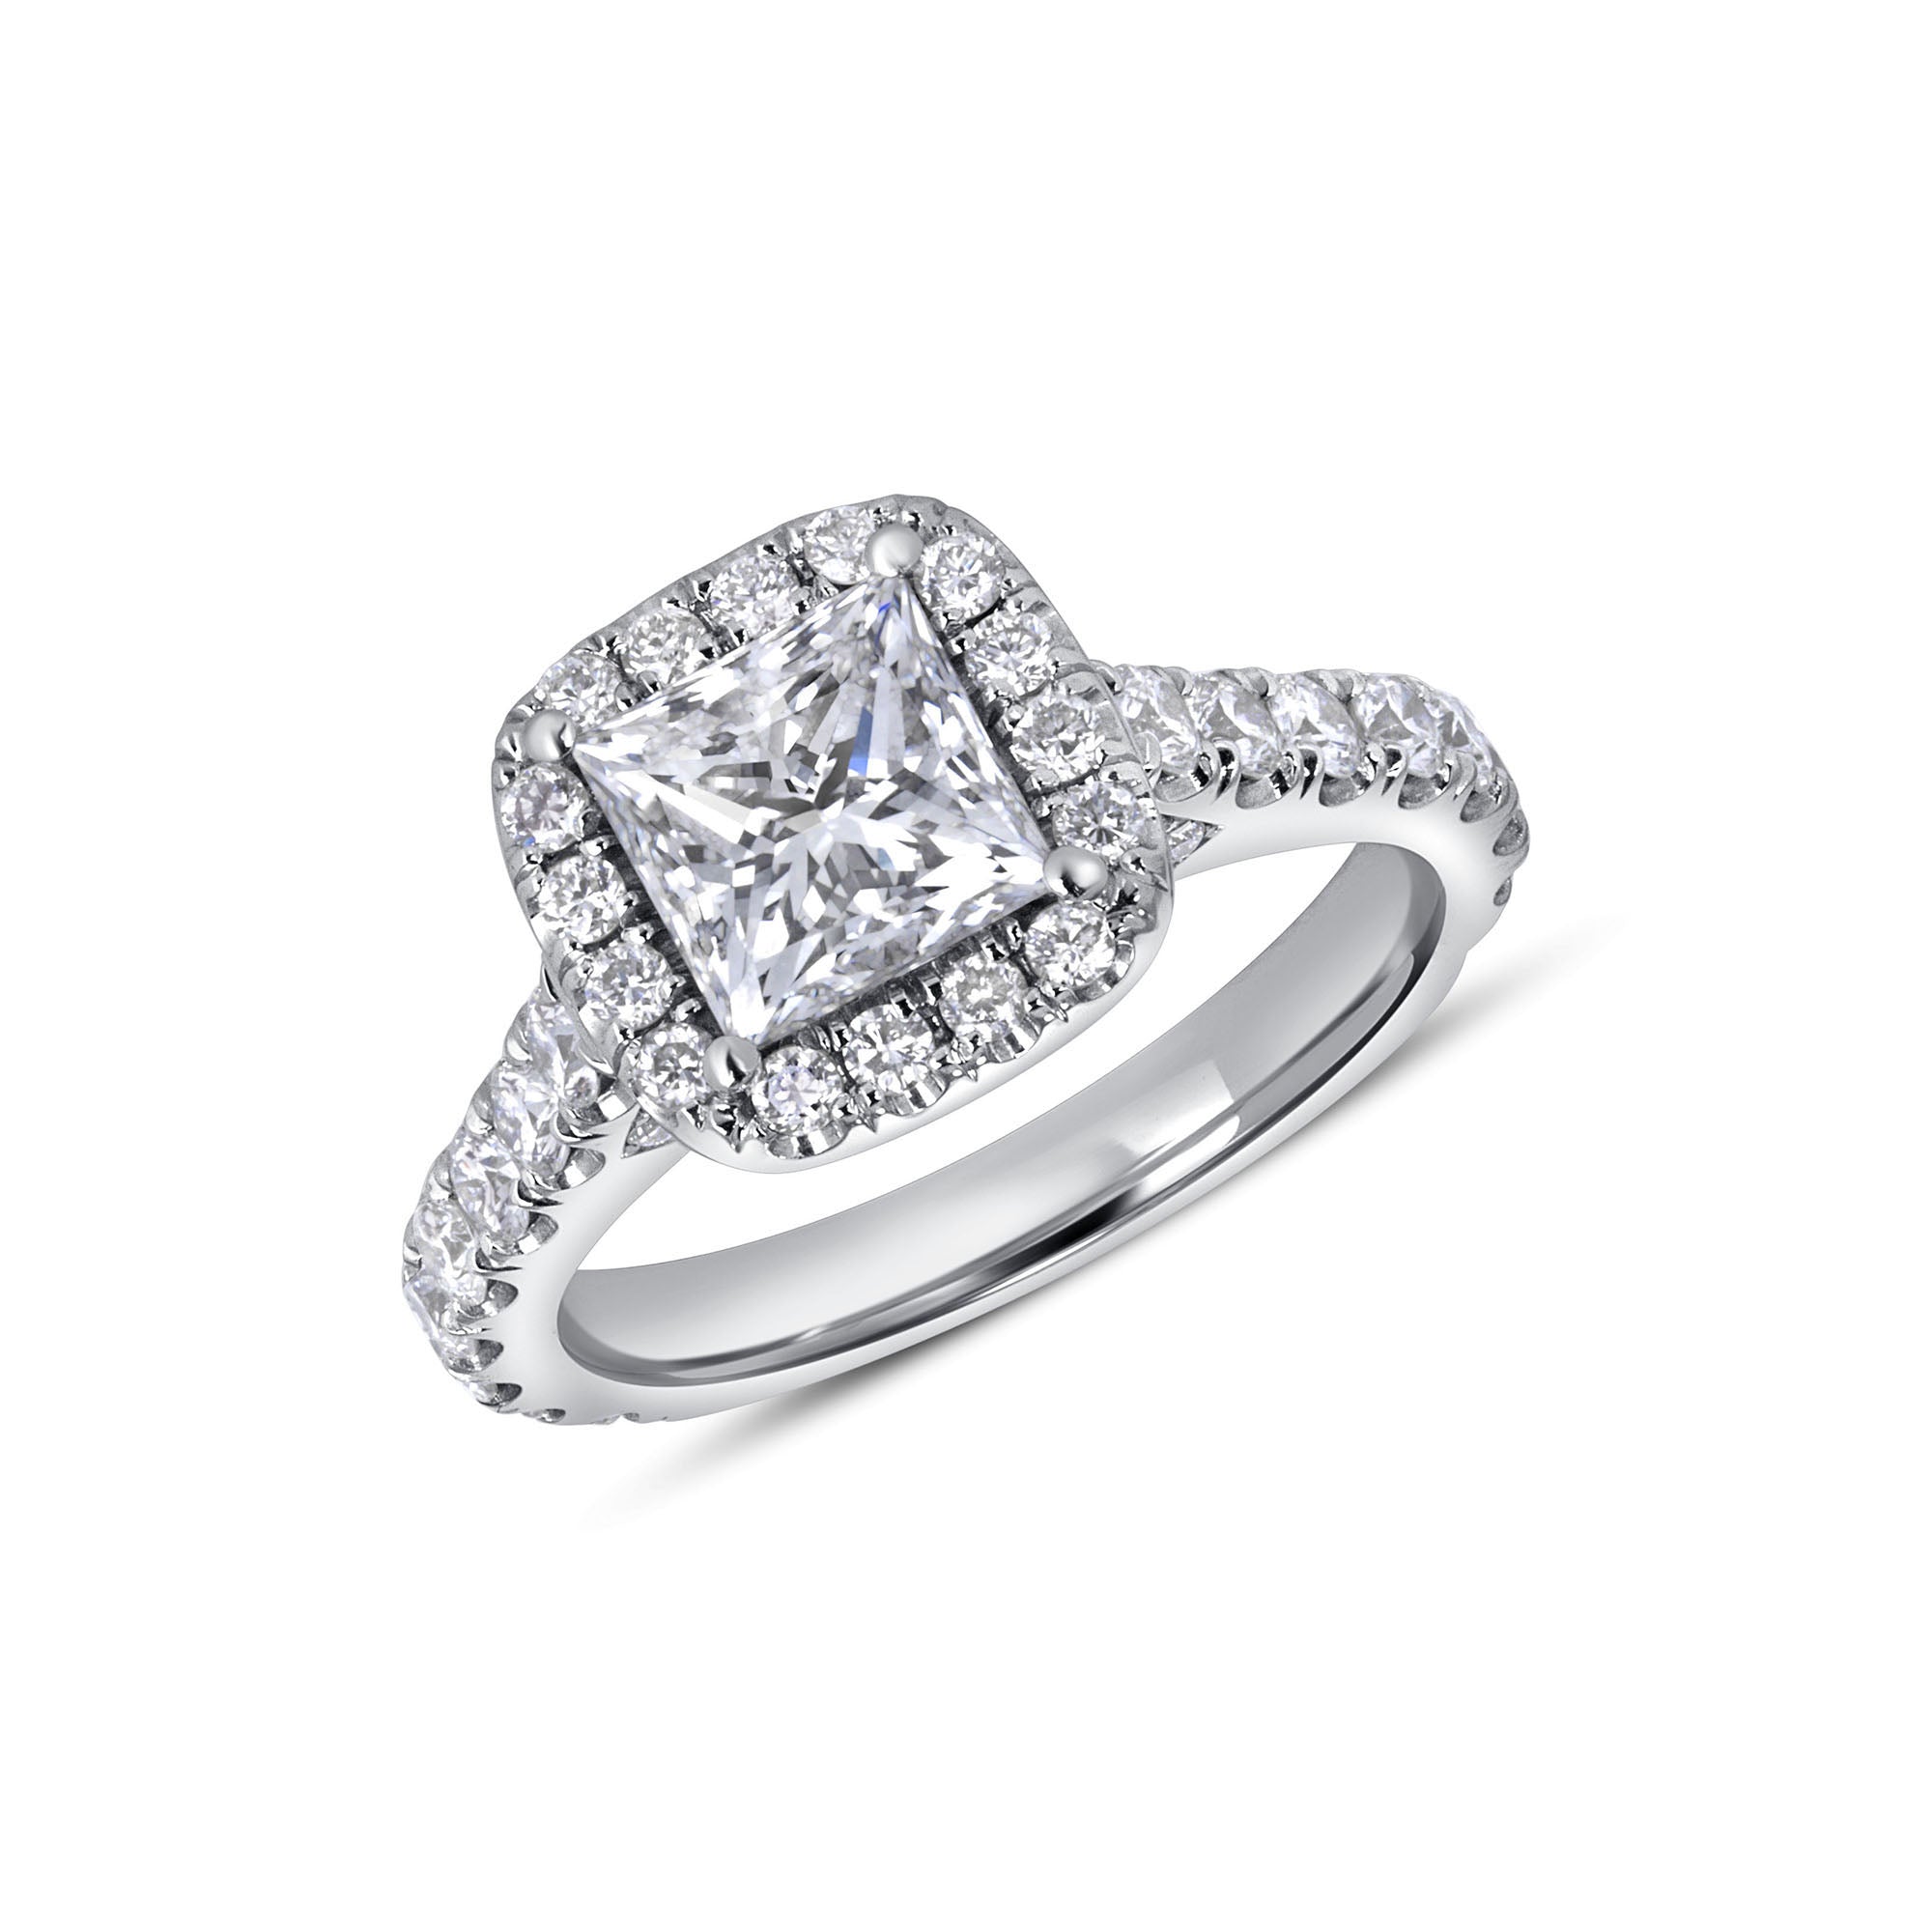 Princess Cut Diamond Halo Ring in 18 Karat White Gold